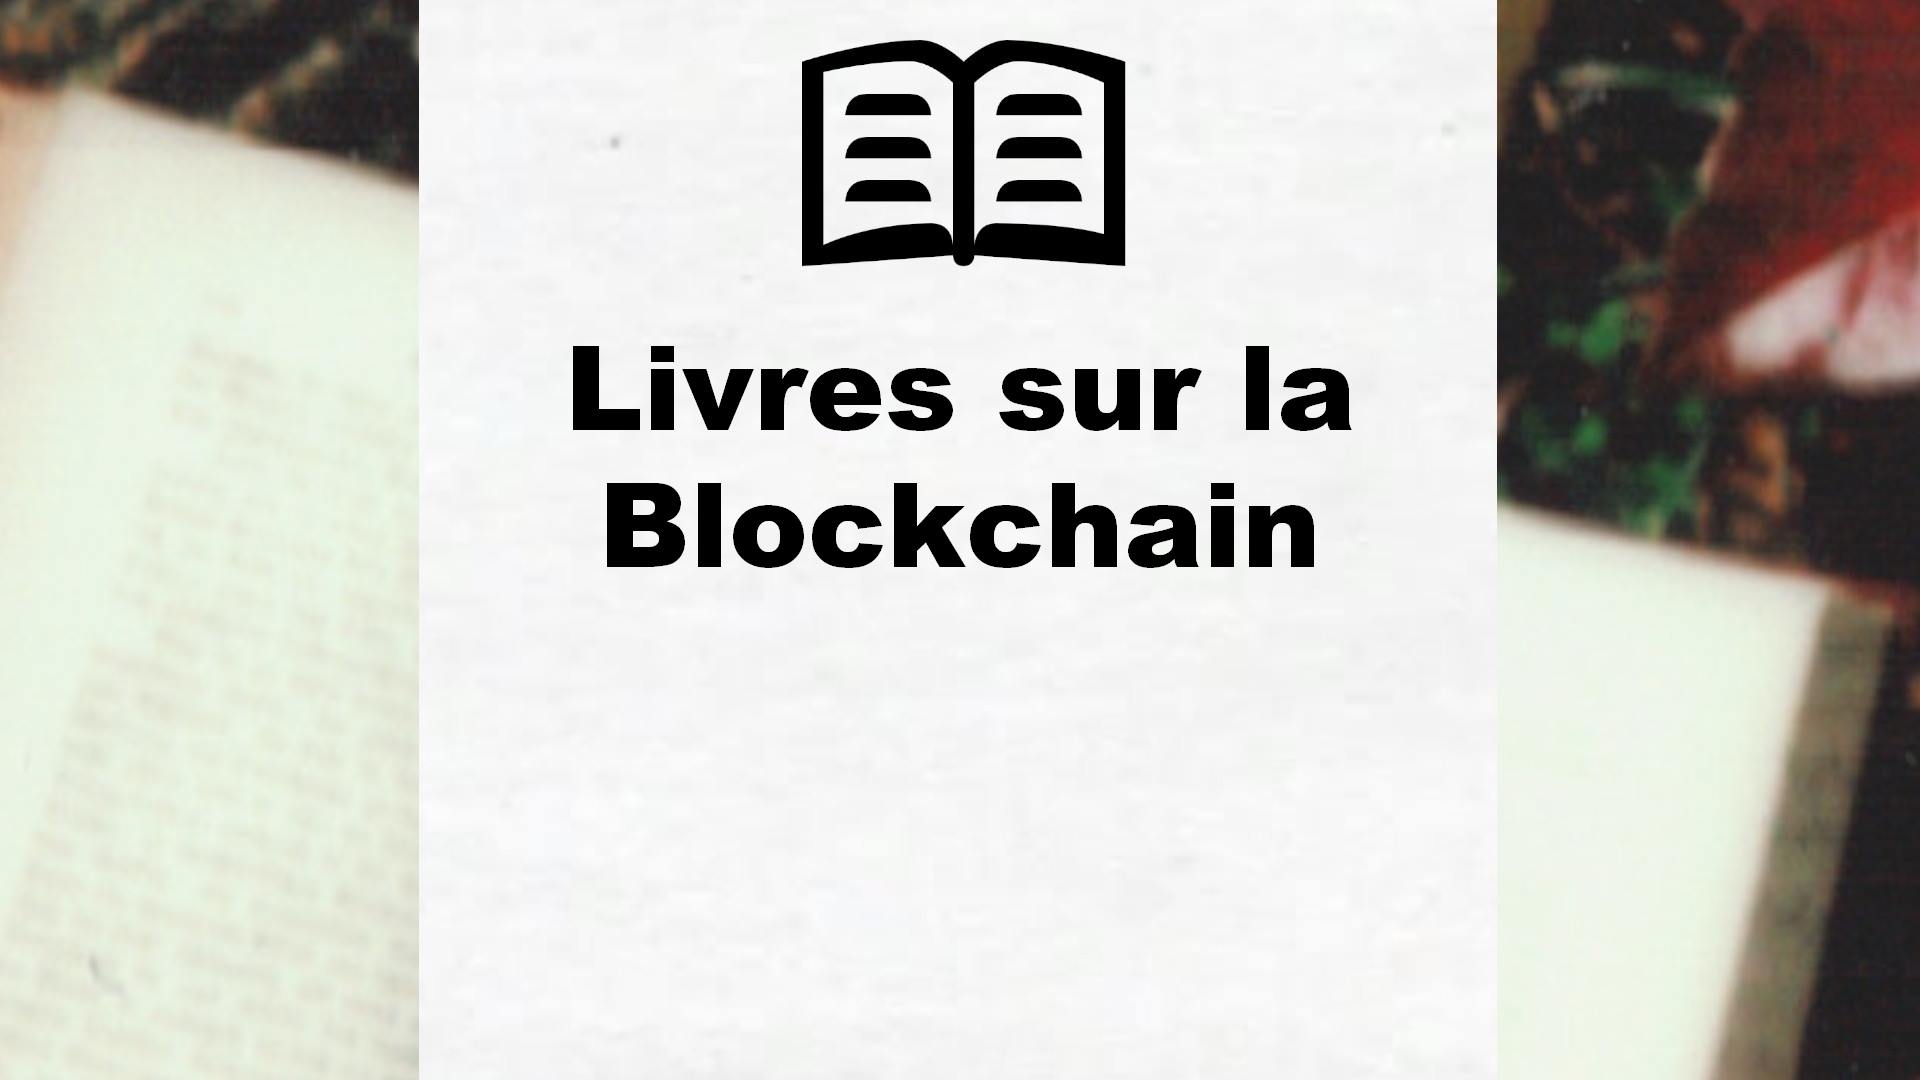 Livres sur la Blockchain